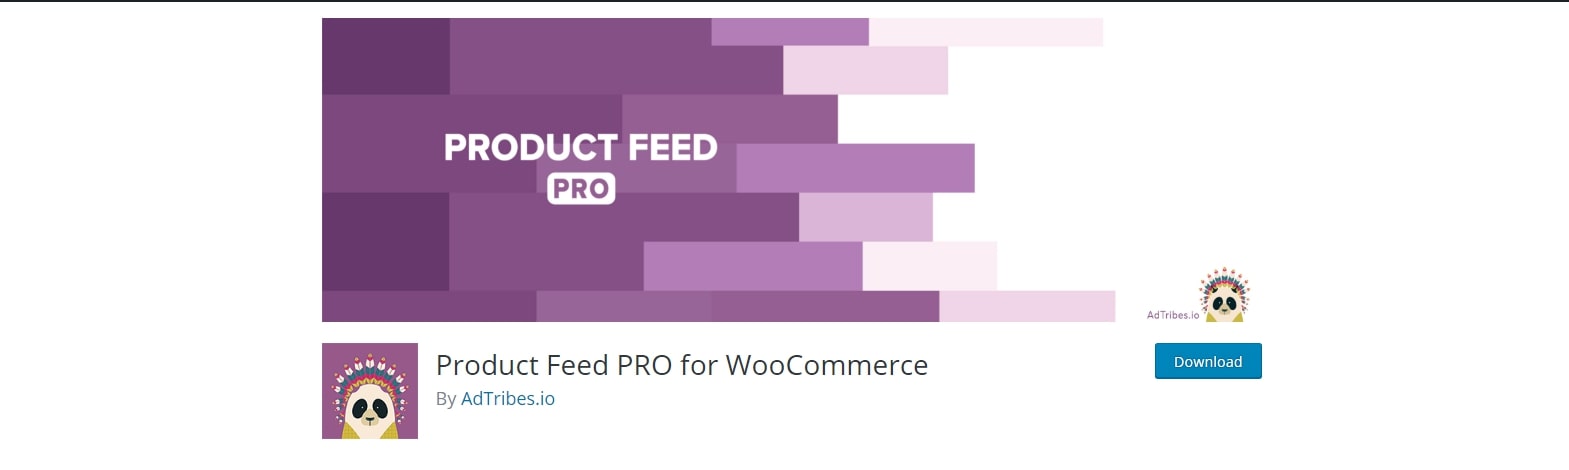 WooCommerce Product Feed Pro